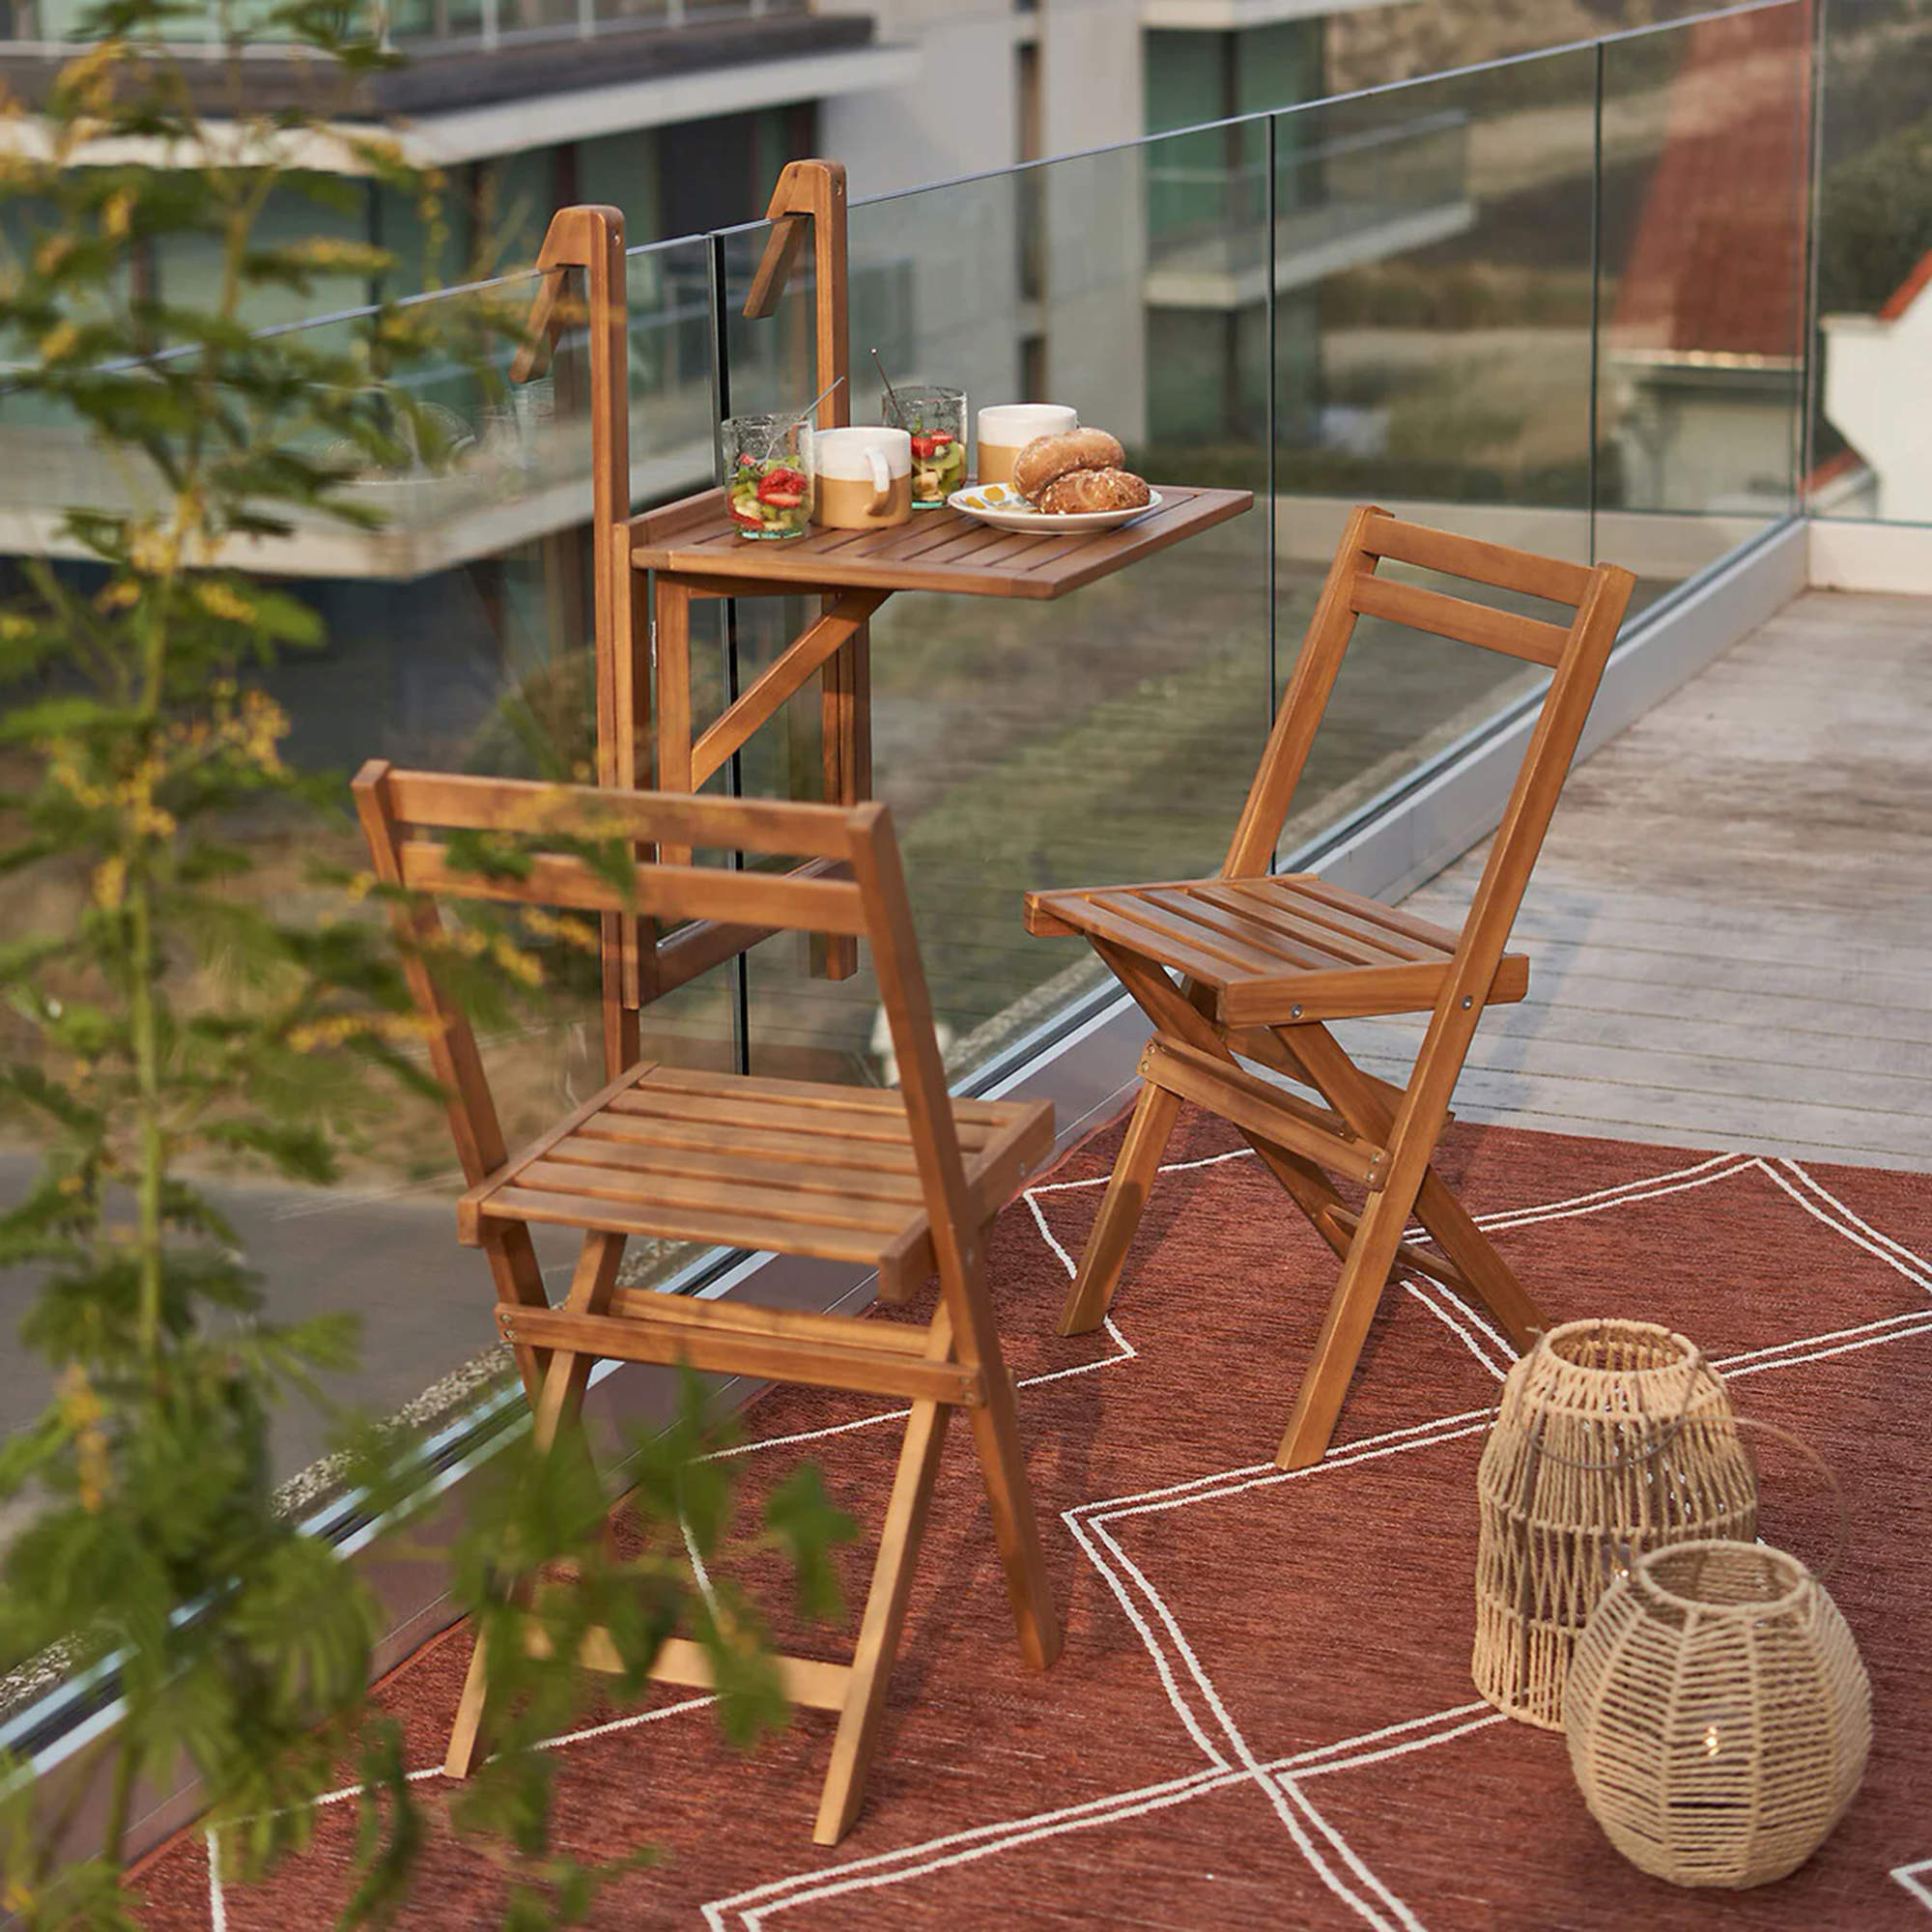 Terraza urbana con sillas plegables y mesa para colgar de la barandilla.